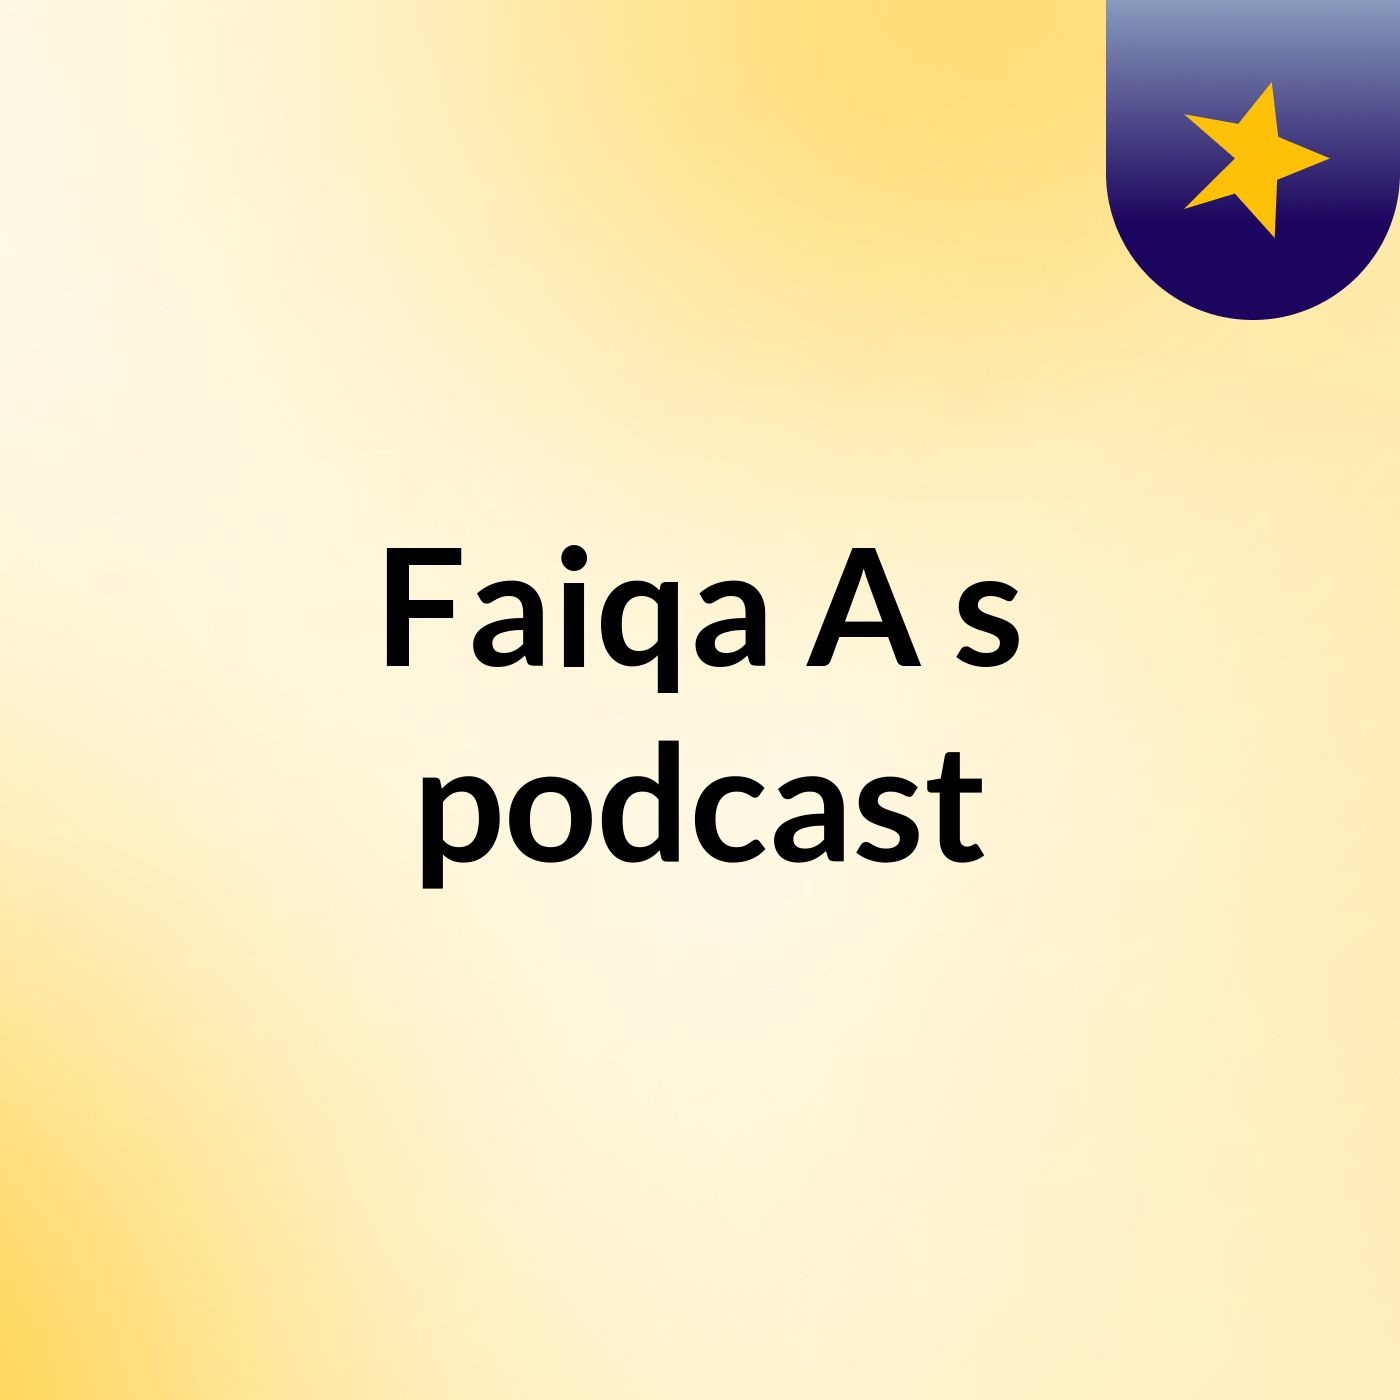 Faiqa A's podcast